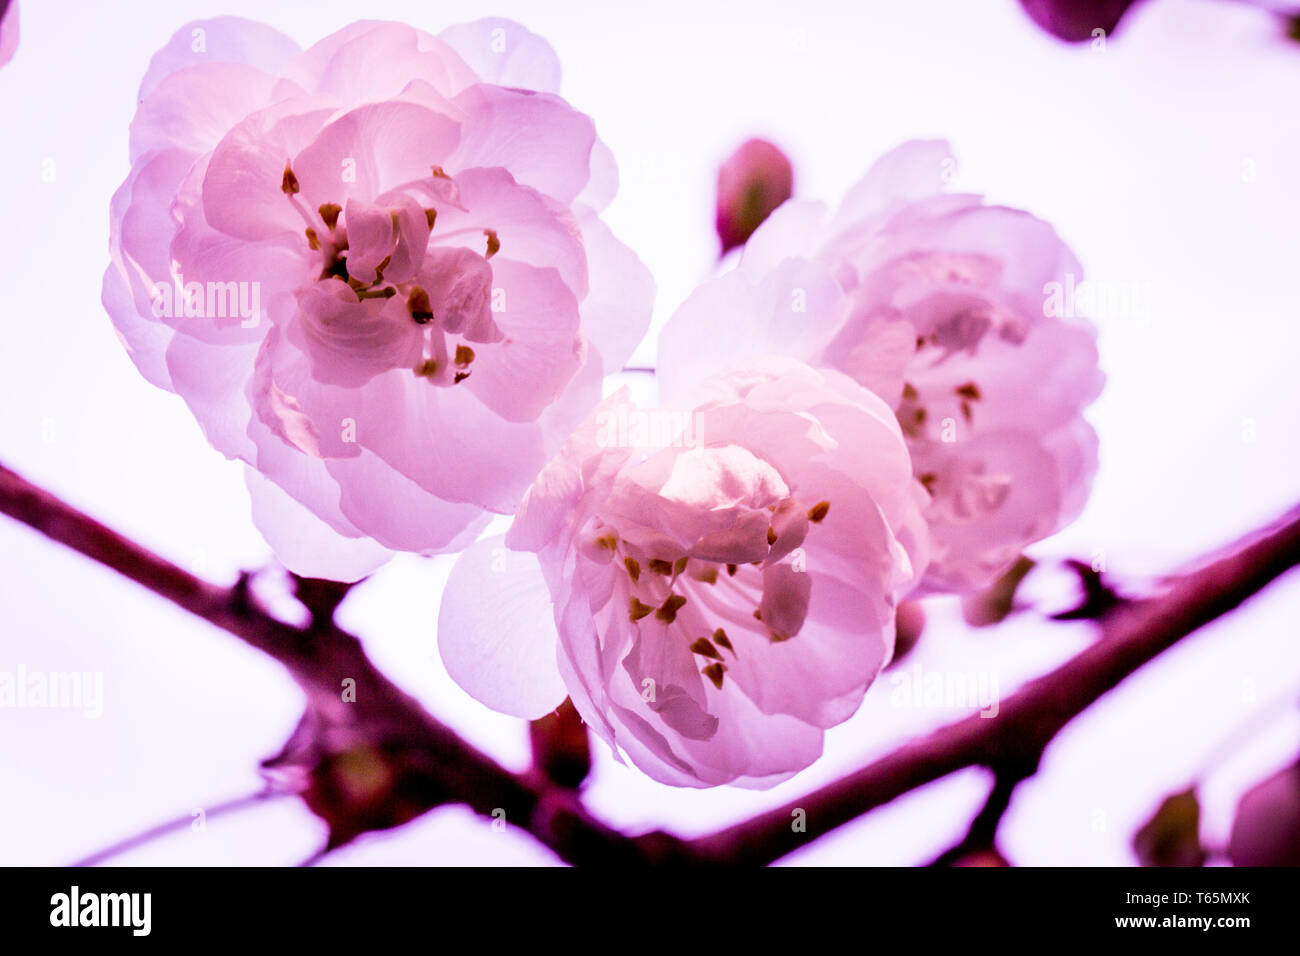 Gros plan photo de cerisier sauvage fleuri (Prunus avium 'Plena') Banque D'Images